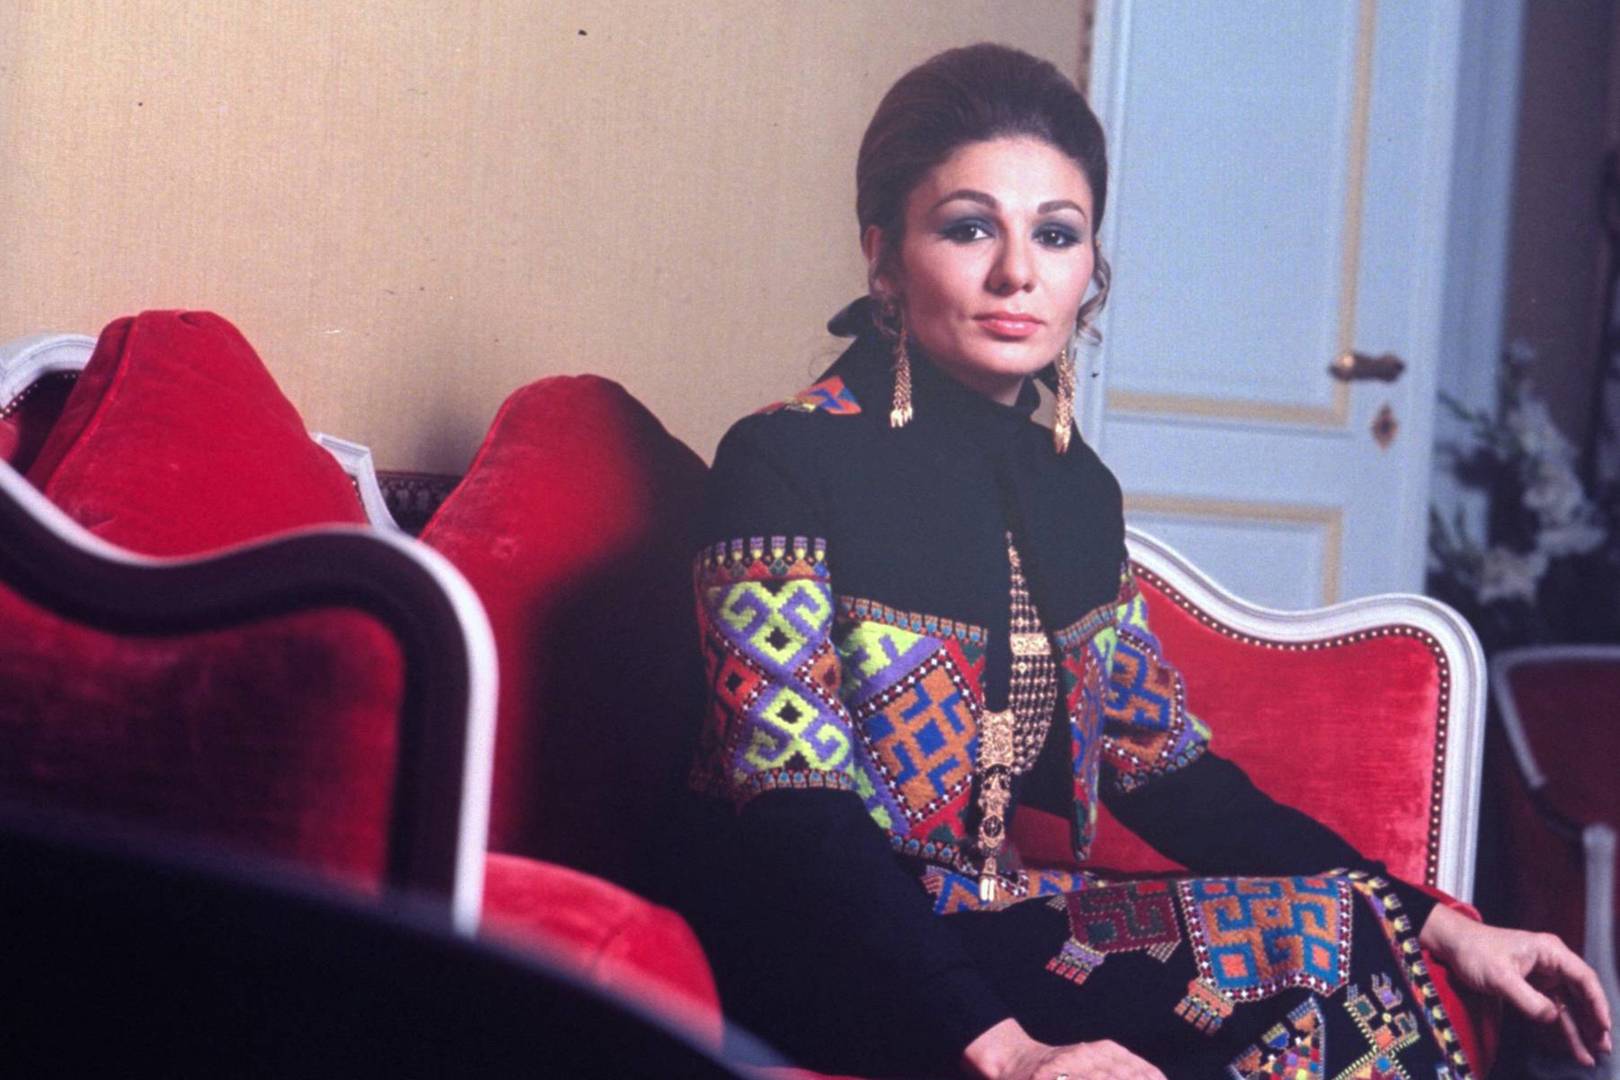 ფარაჰ ფეჰლევი - ირანის უკანასკნელი დედოფალი, თავისუფლების სიმბოლო და ქალი, რომელსაც ჯეკი კენედს ადარებდნენ